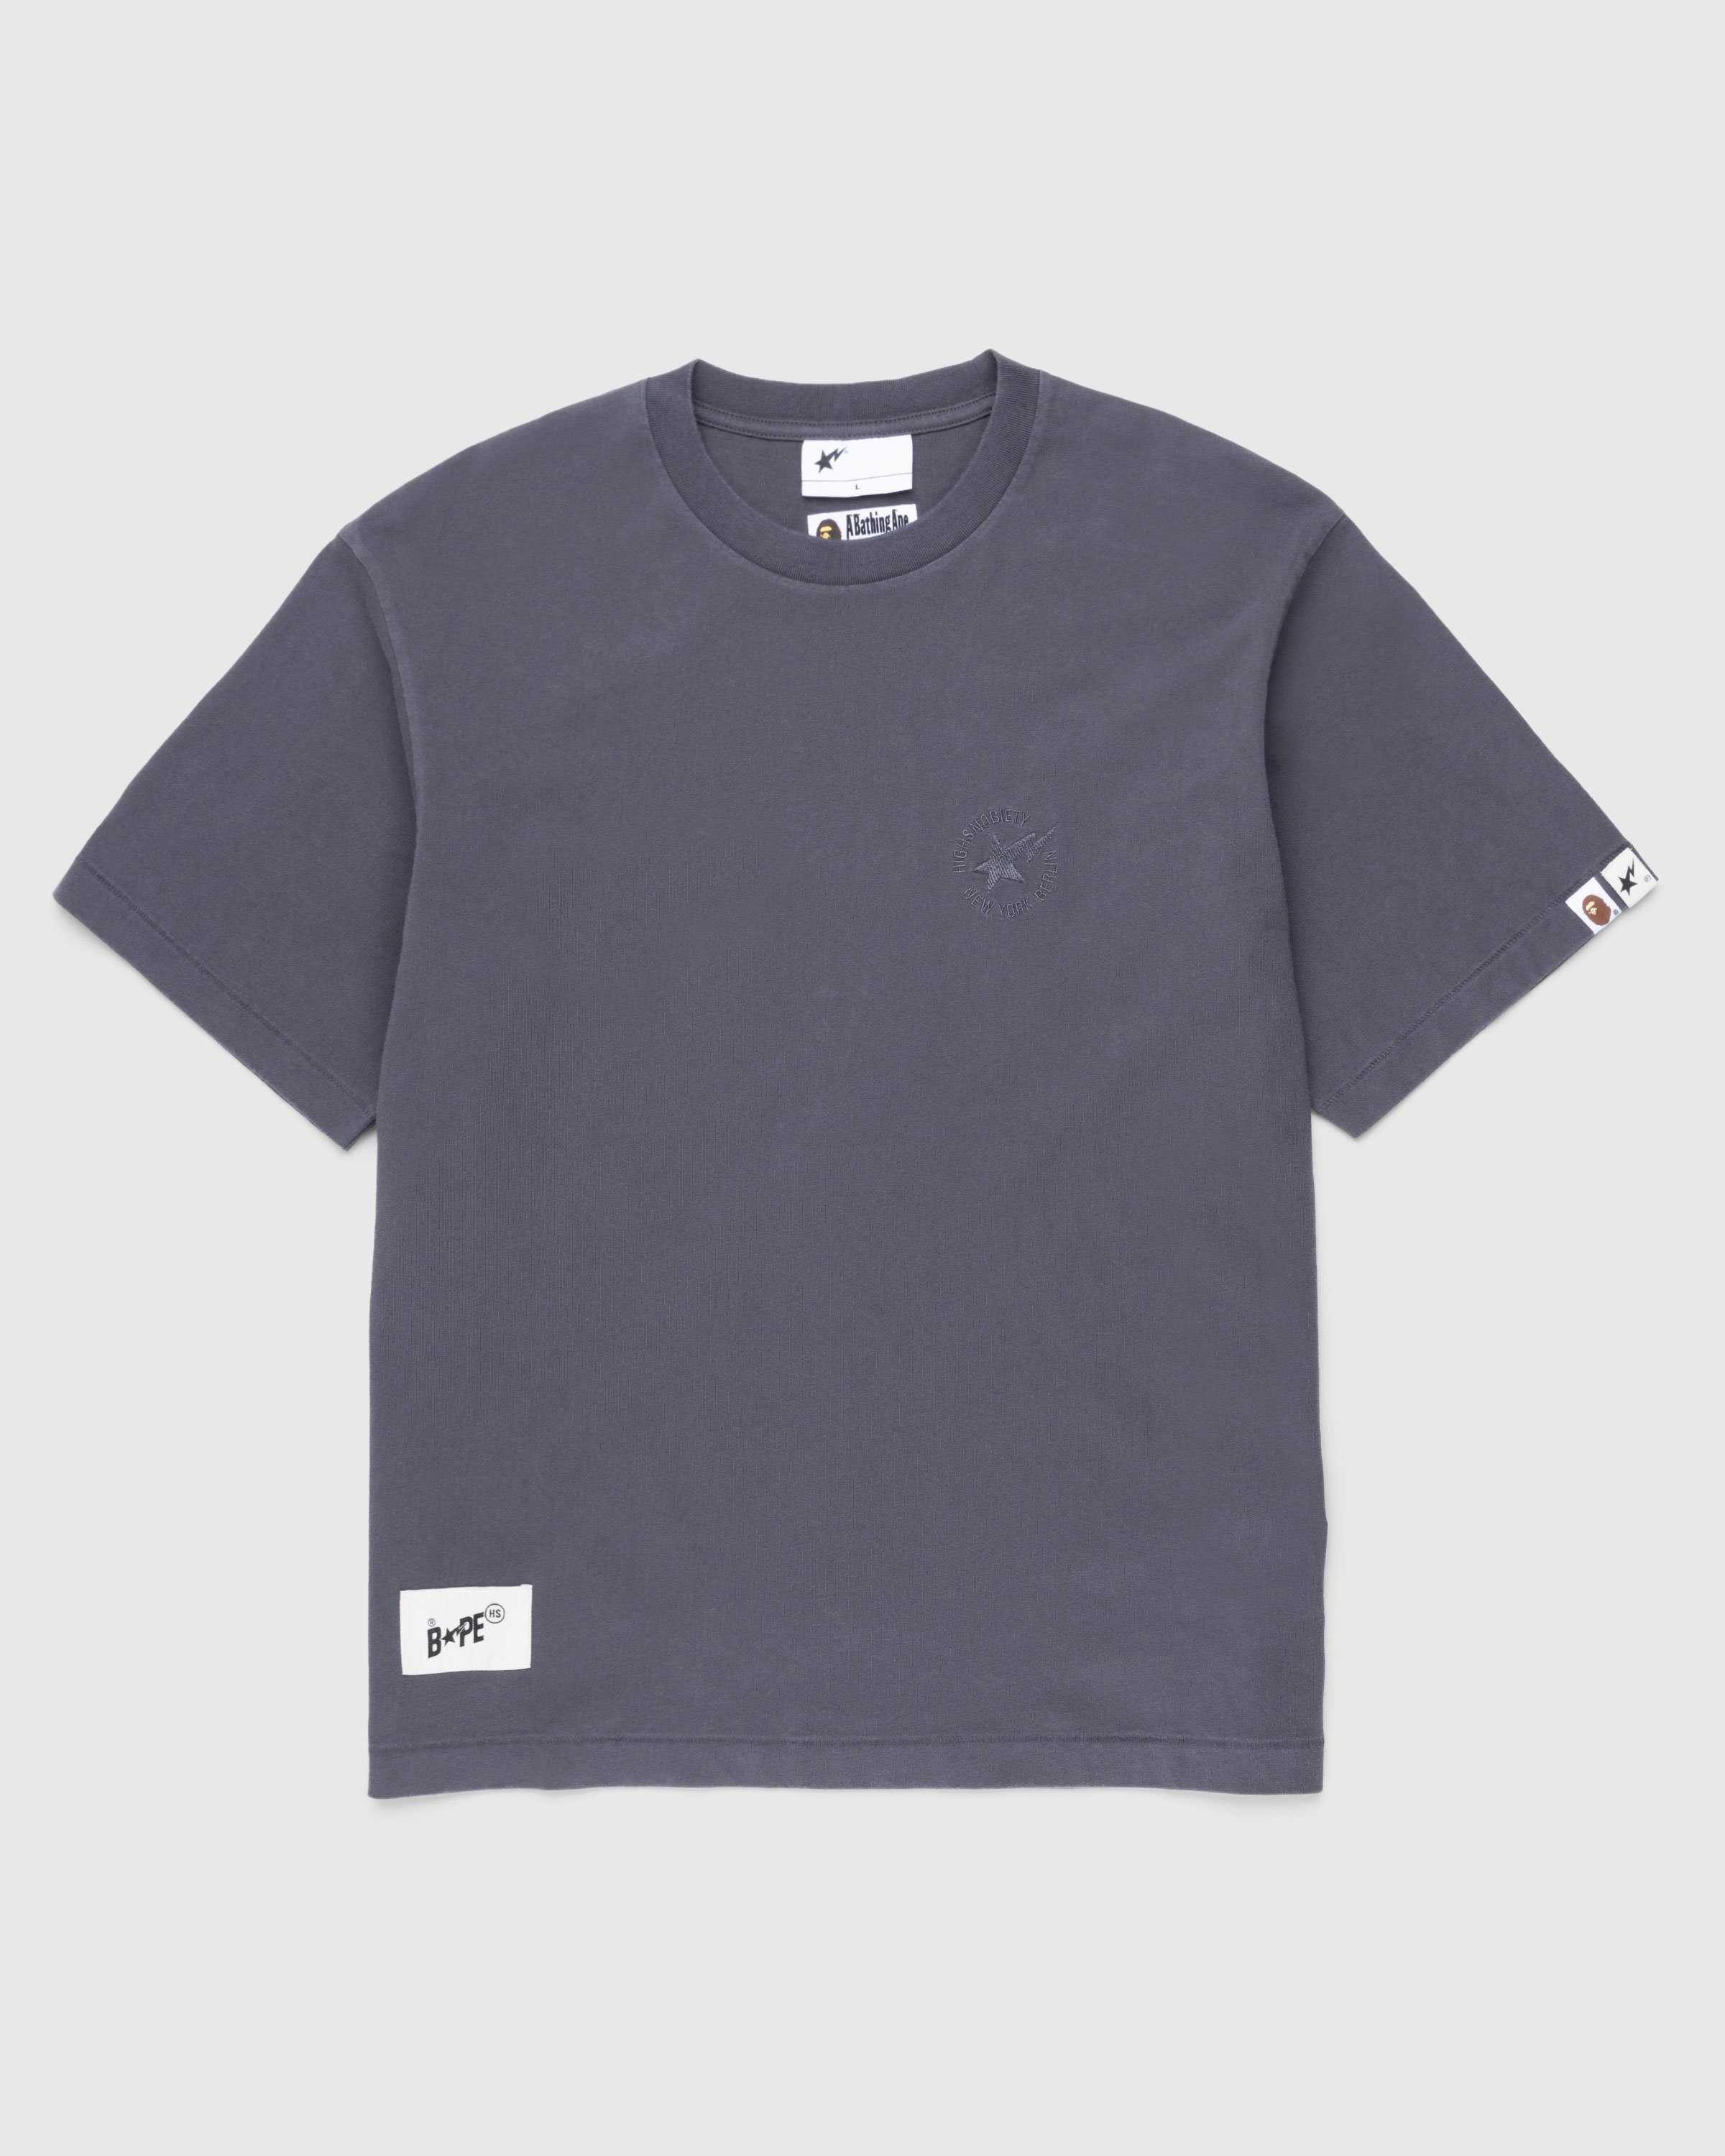 BAPE x Highsnobiety - Heavy Washed T-Shirt Charcoal - Clothing - Grey - Image 1